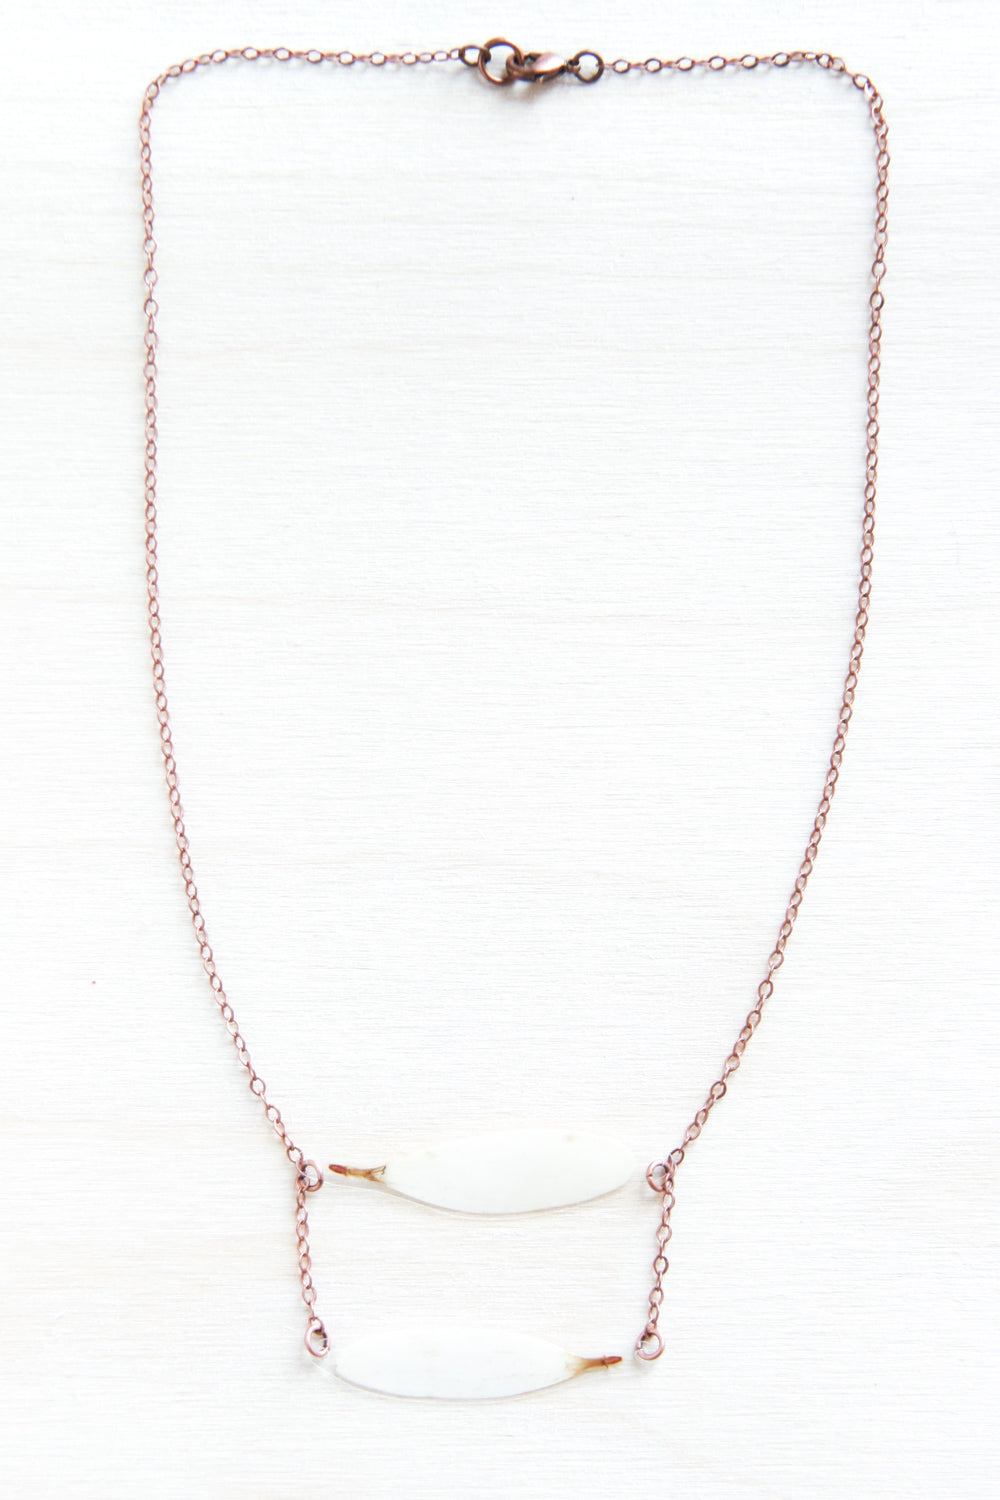 White Shasta Daisy Petal Stacked Necklace